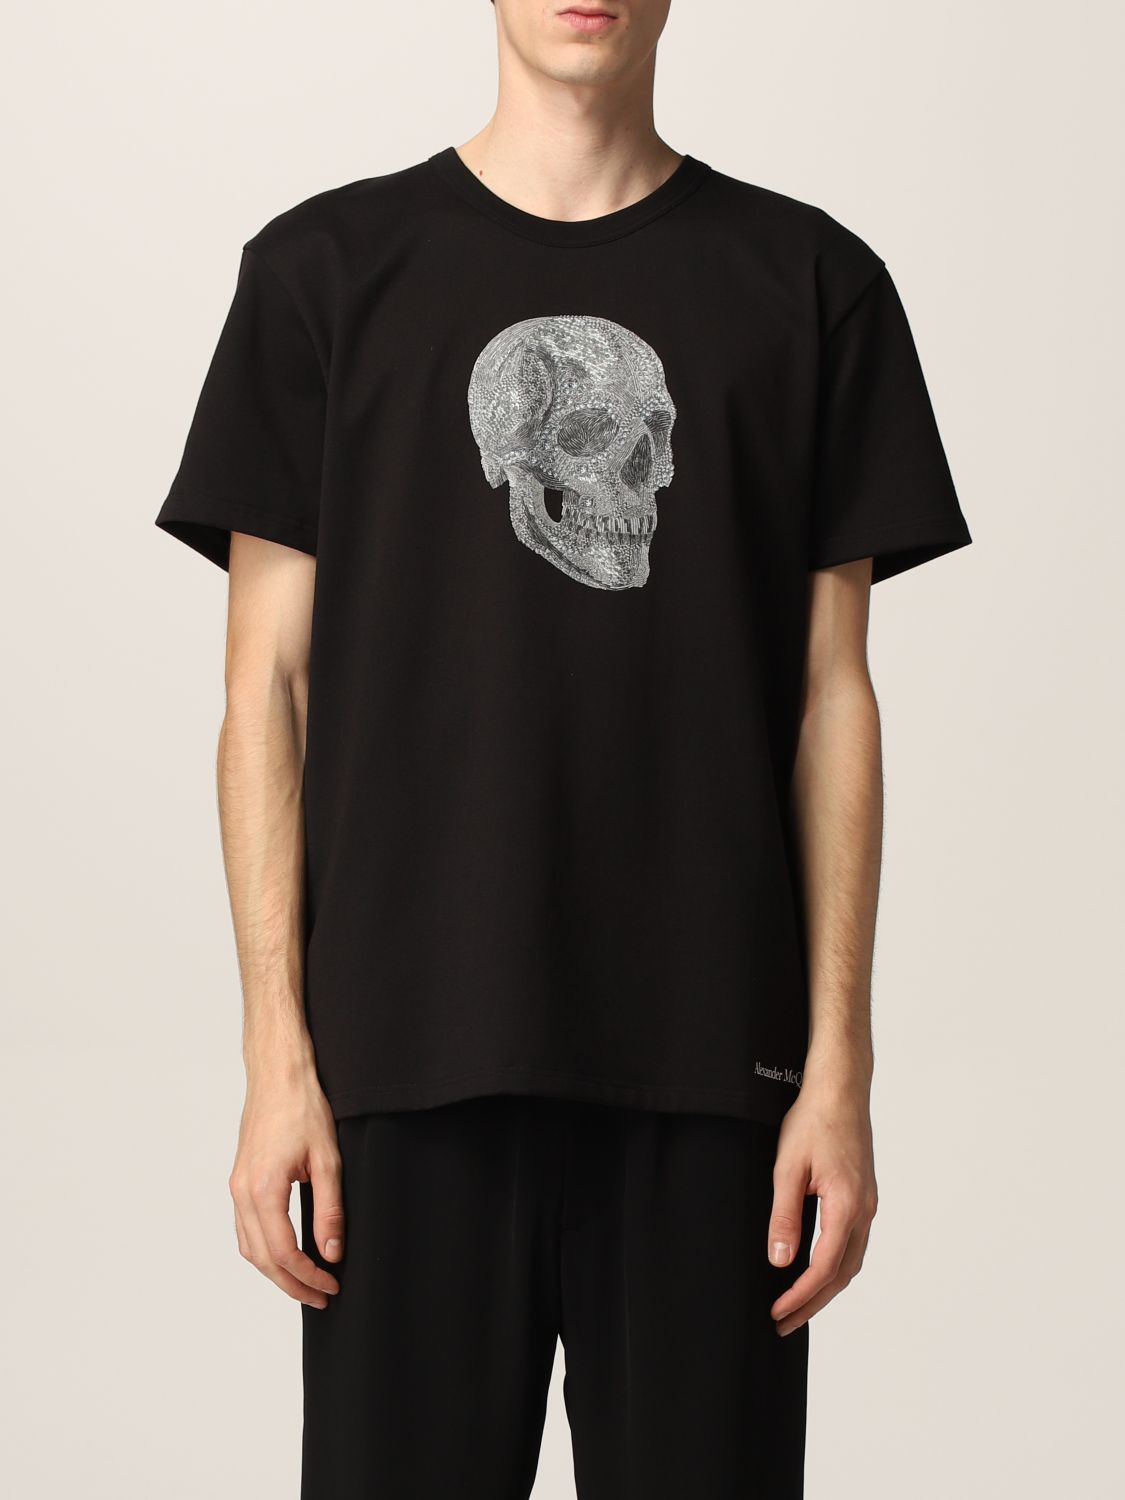 ALEXANDER MCQUEEN: t-shirt with skull - Black | Alexander Mcqueen t ...